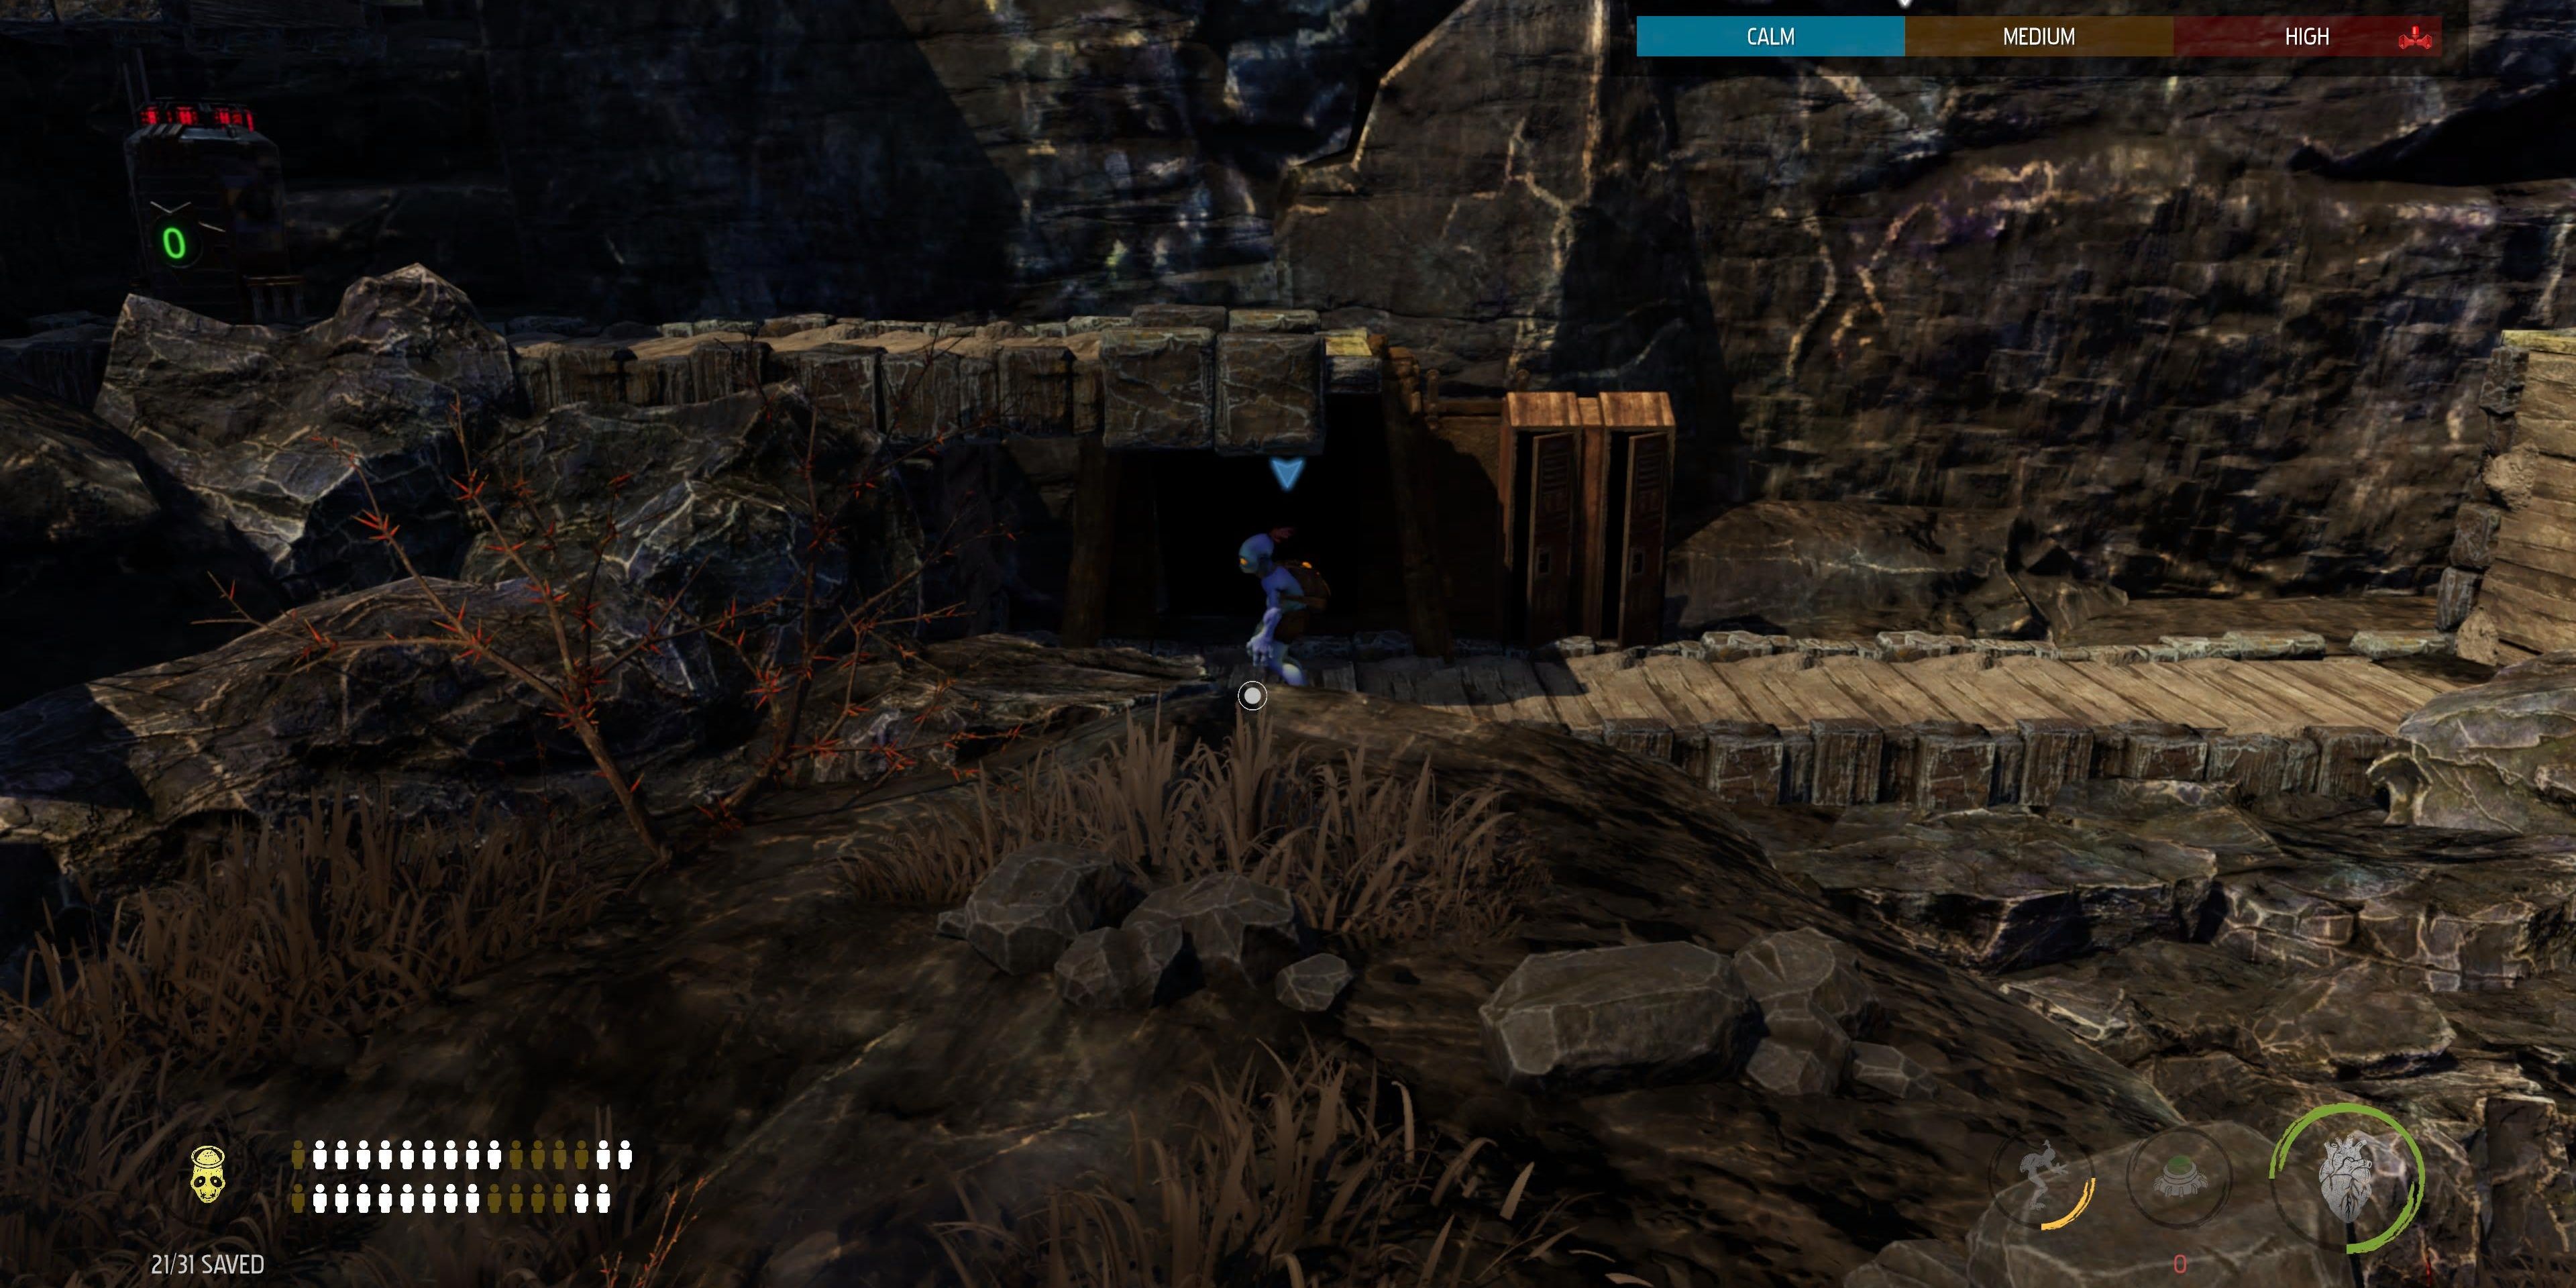 Secret tunnel door in Oddworld Soulstorm